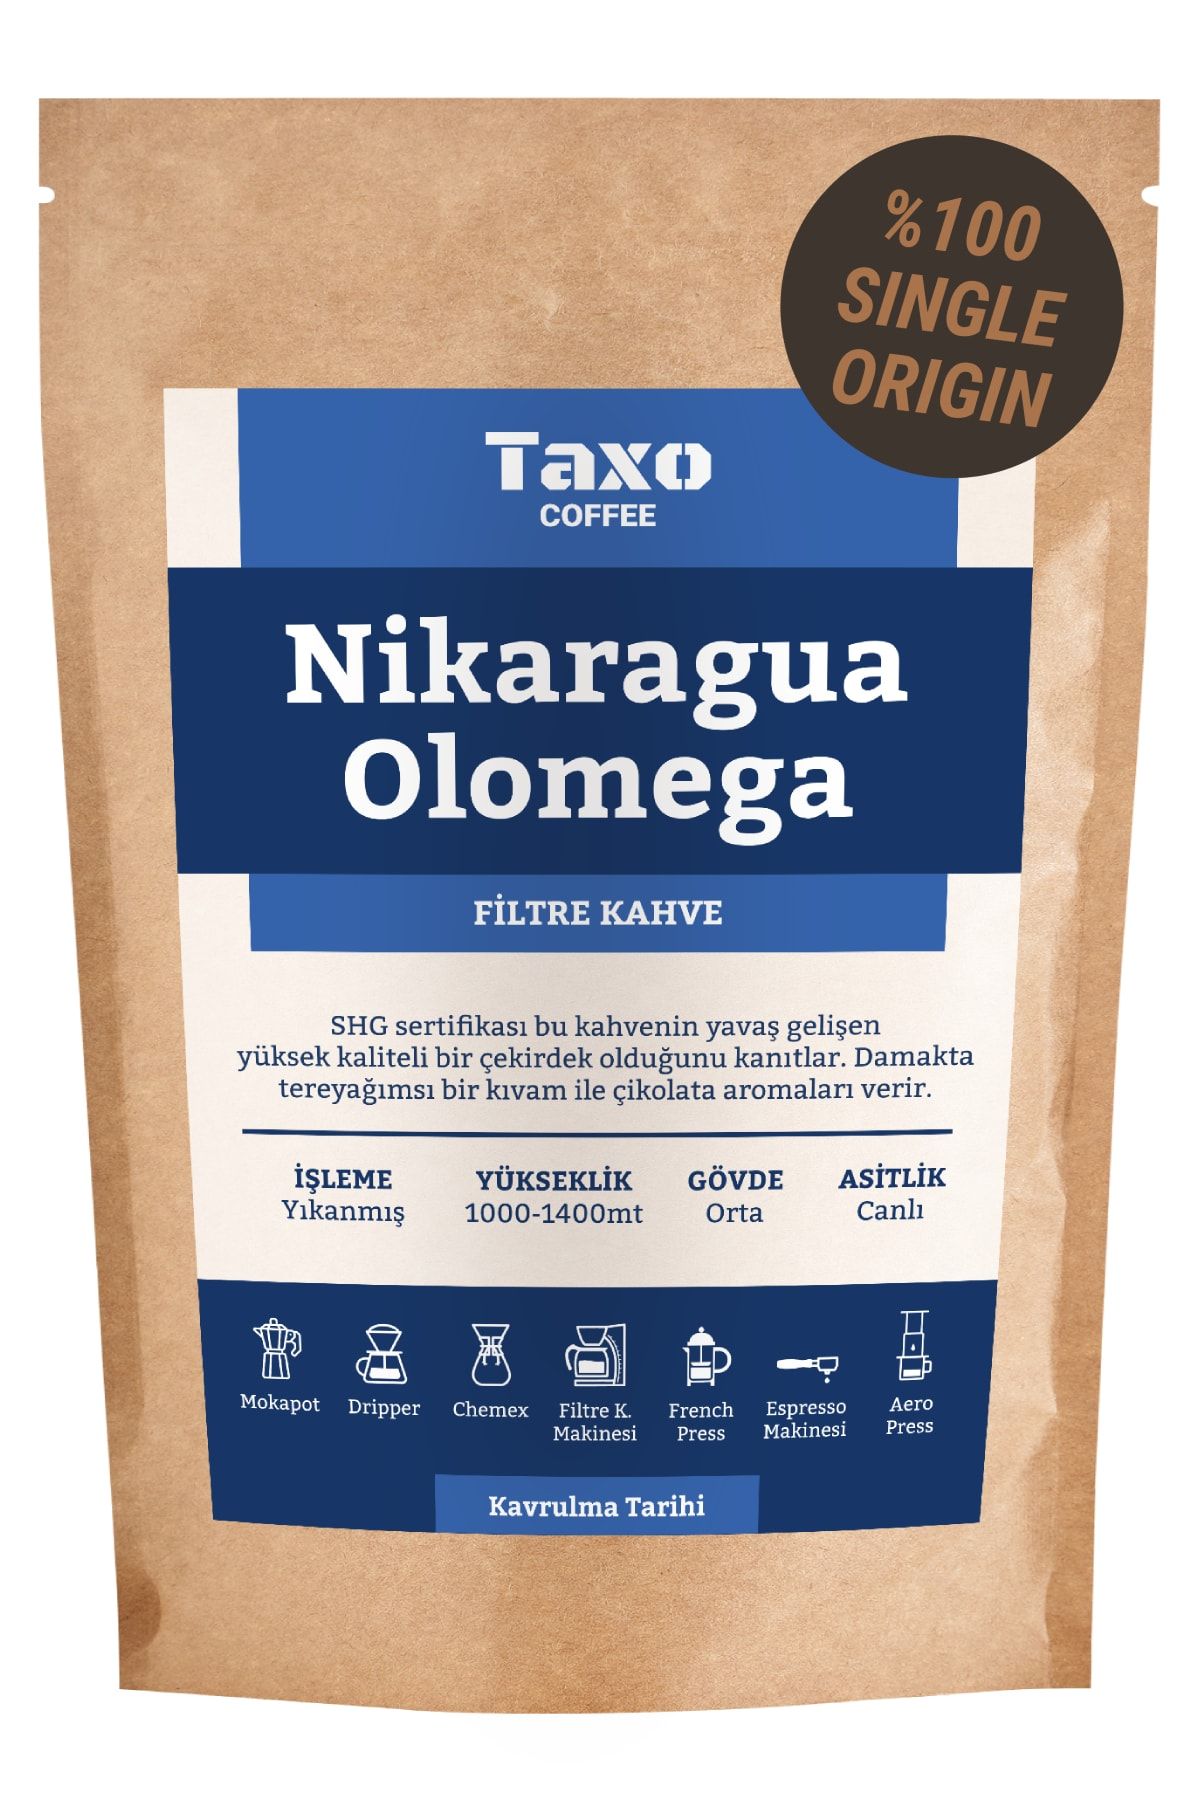 Taxo Coffee Nikaragua Olomega Filtre Kahve 200gr